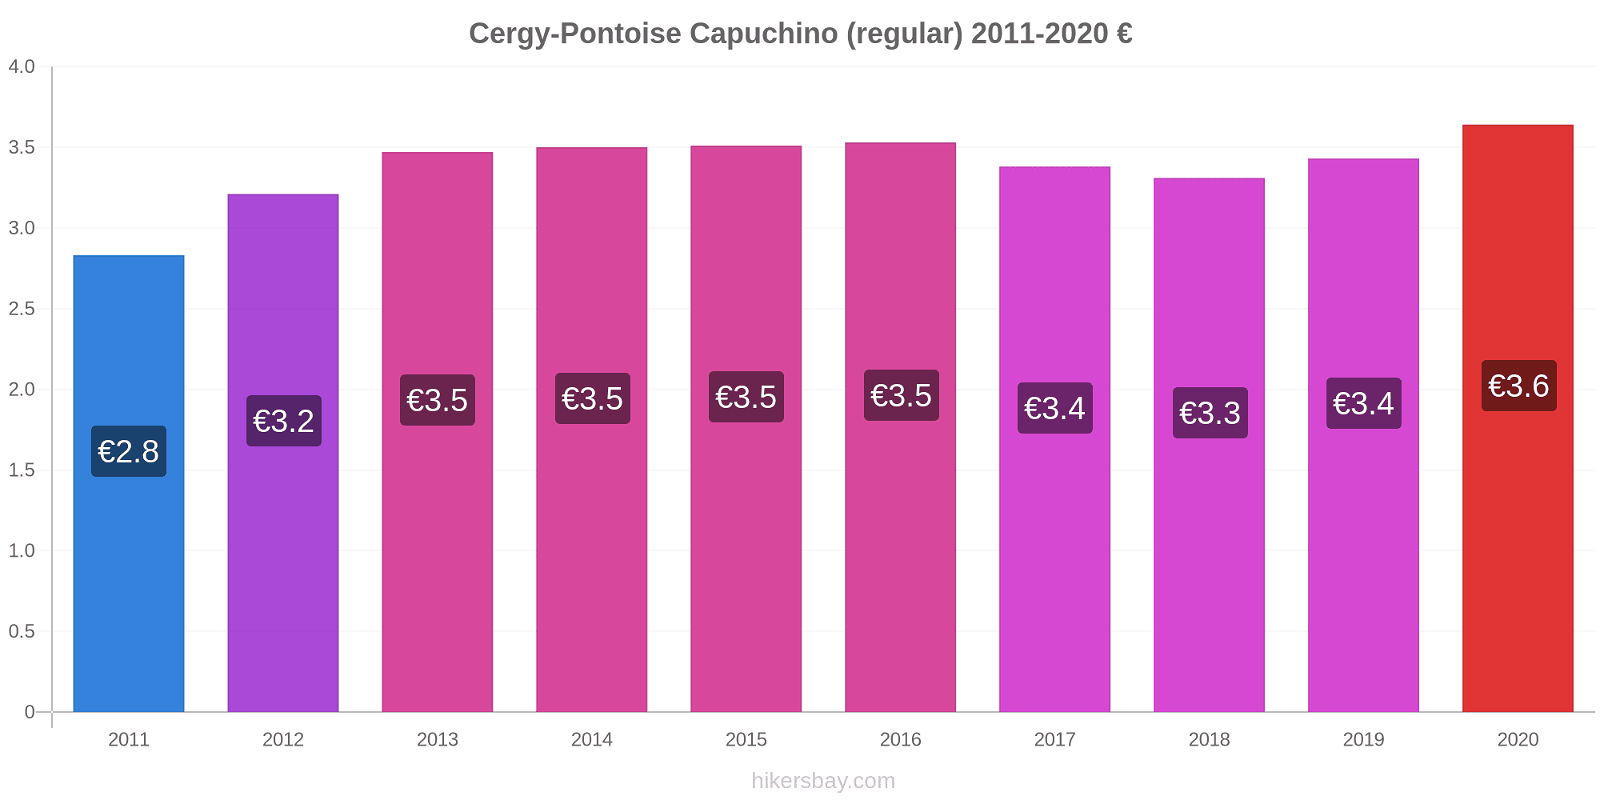 Cergy-Pontoise cambios de precios Capuchino (regular) hikersbay.com